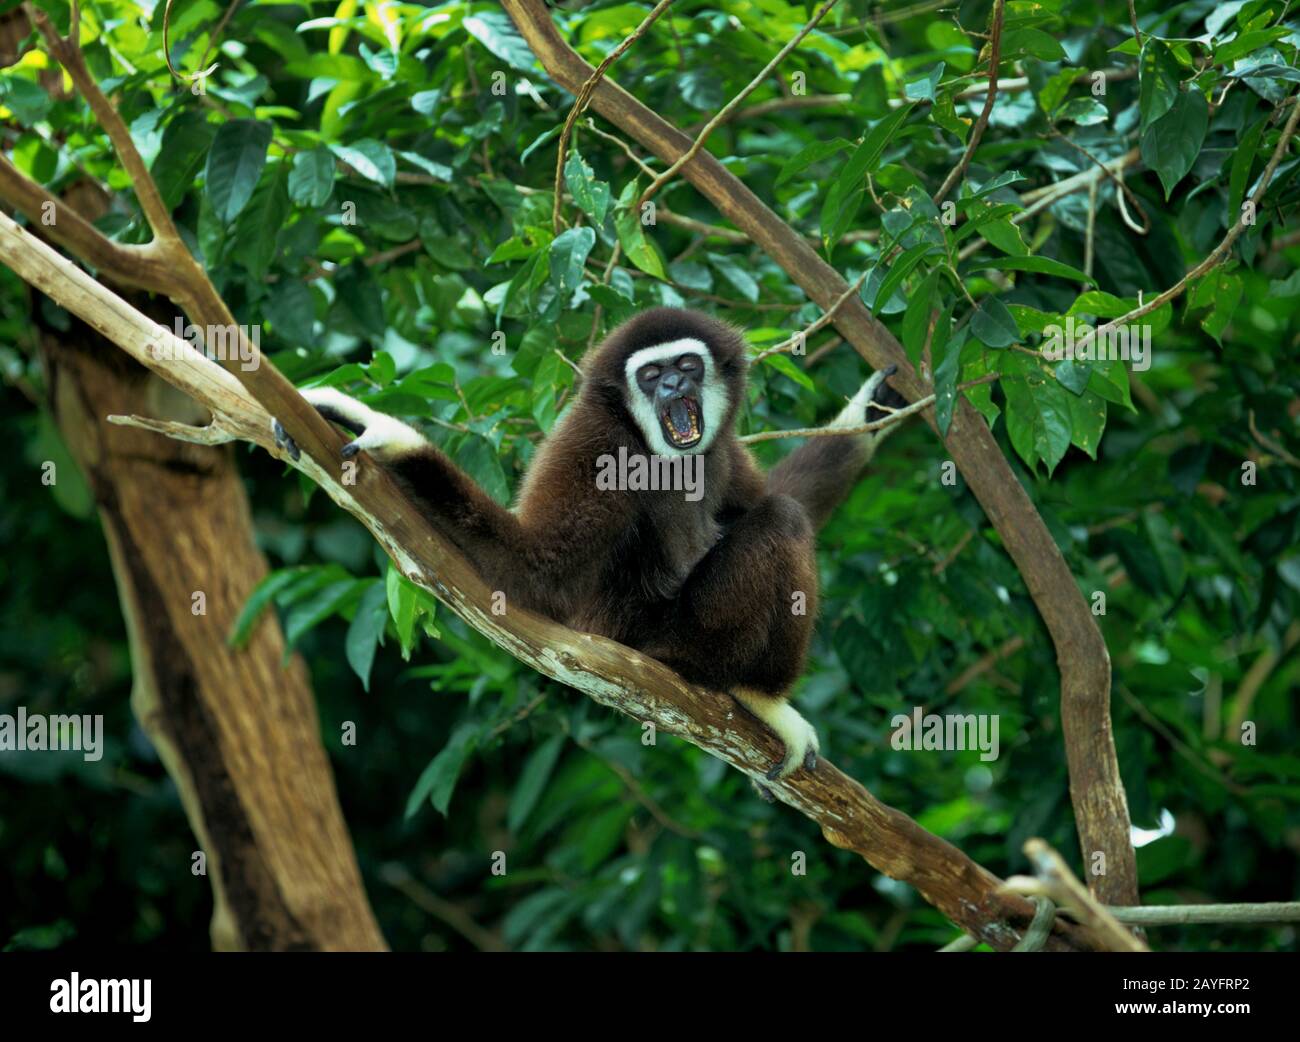 Gibbon dark-handed, Gibbon nero-handed, gibbon agile (Hyobates agilis), si siede a sbadiglio su un ramo, vista frontale Foto Stock